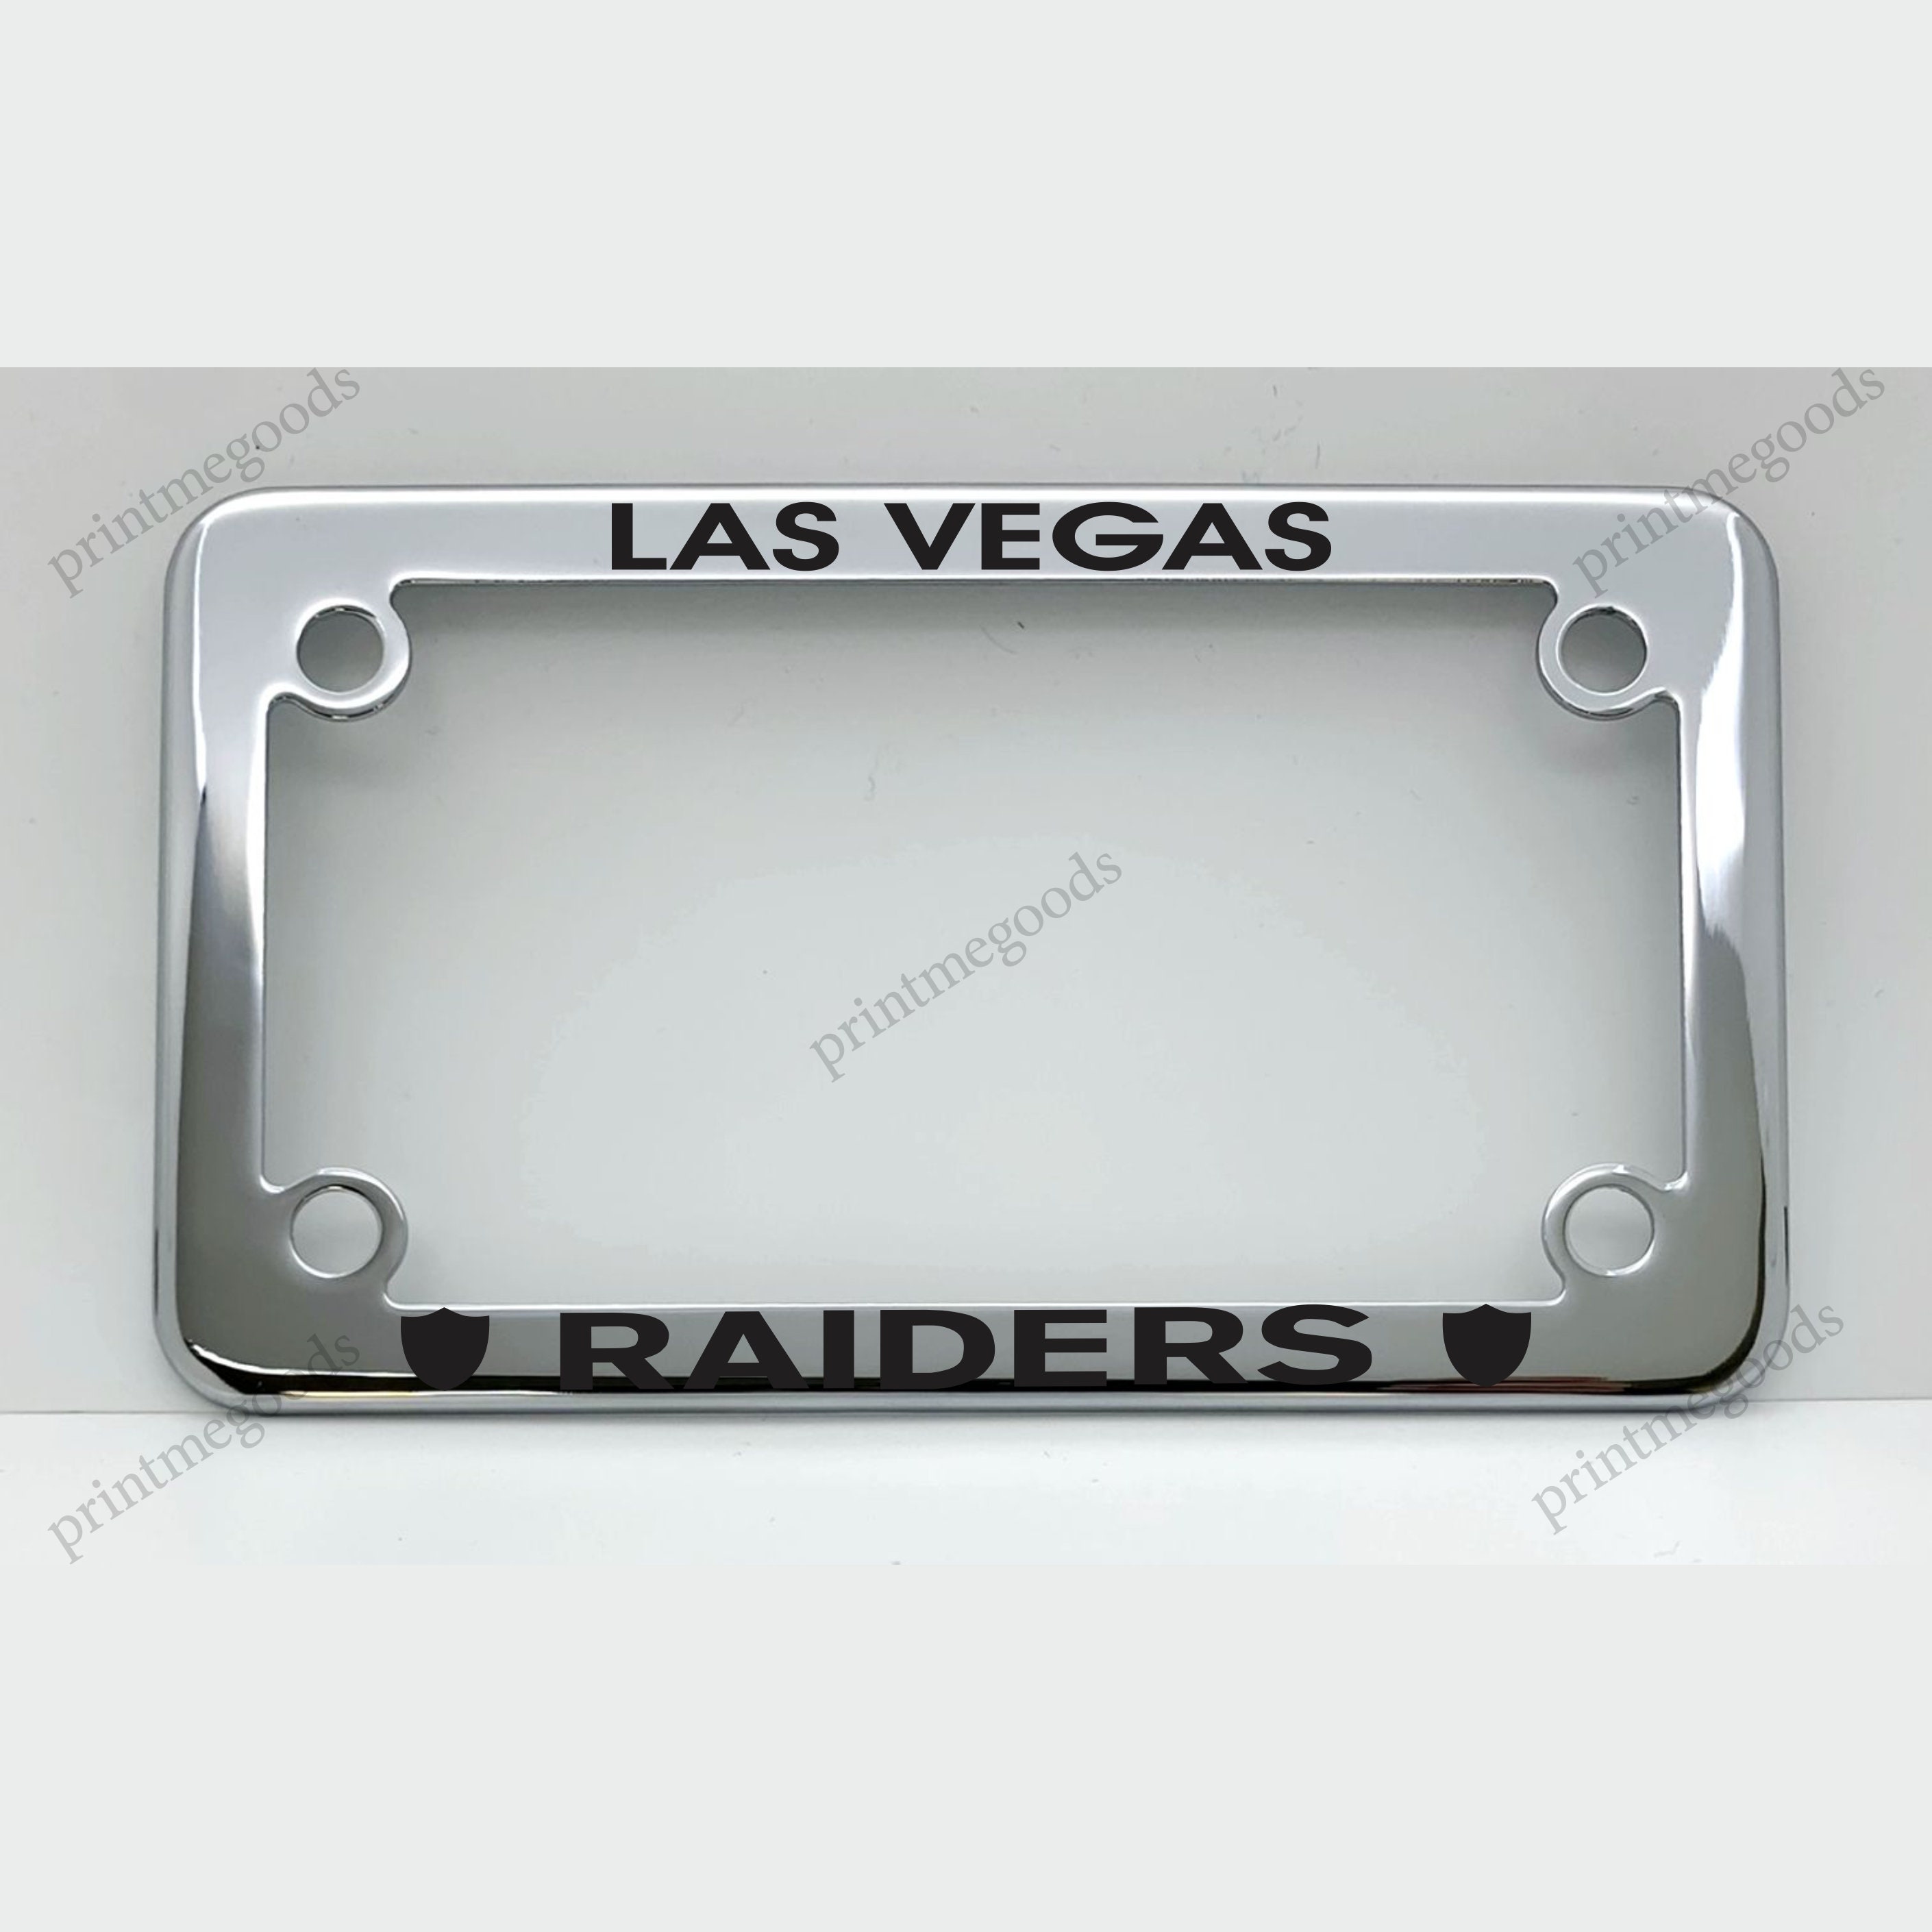 Las Vegas Raiders Embossed License Plate Frame